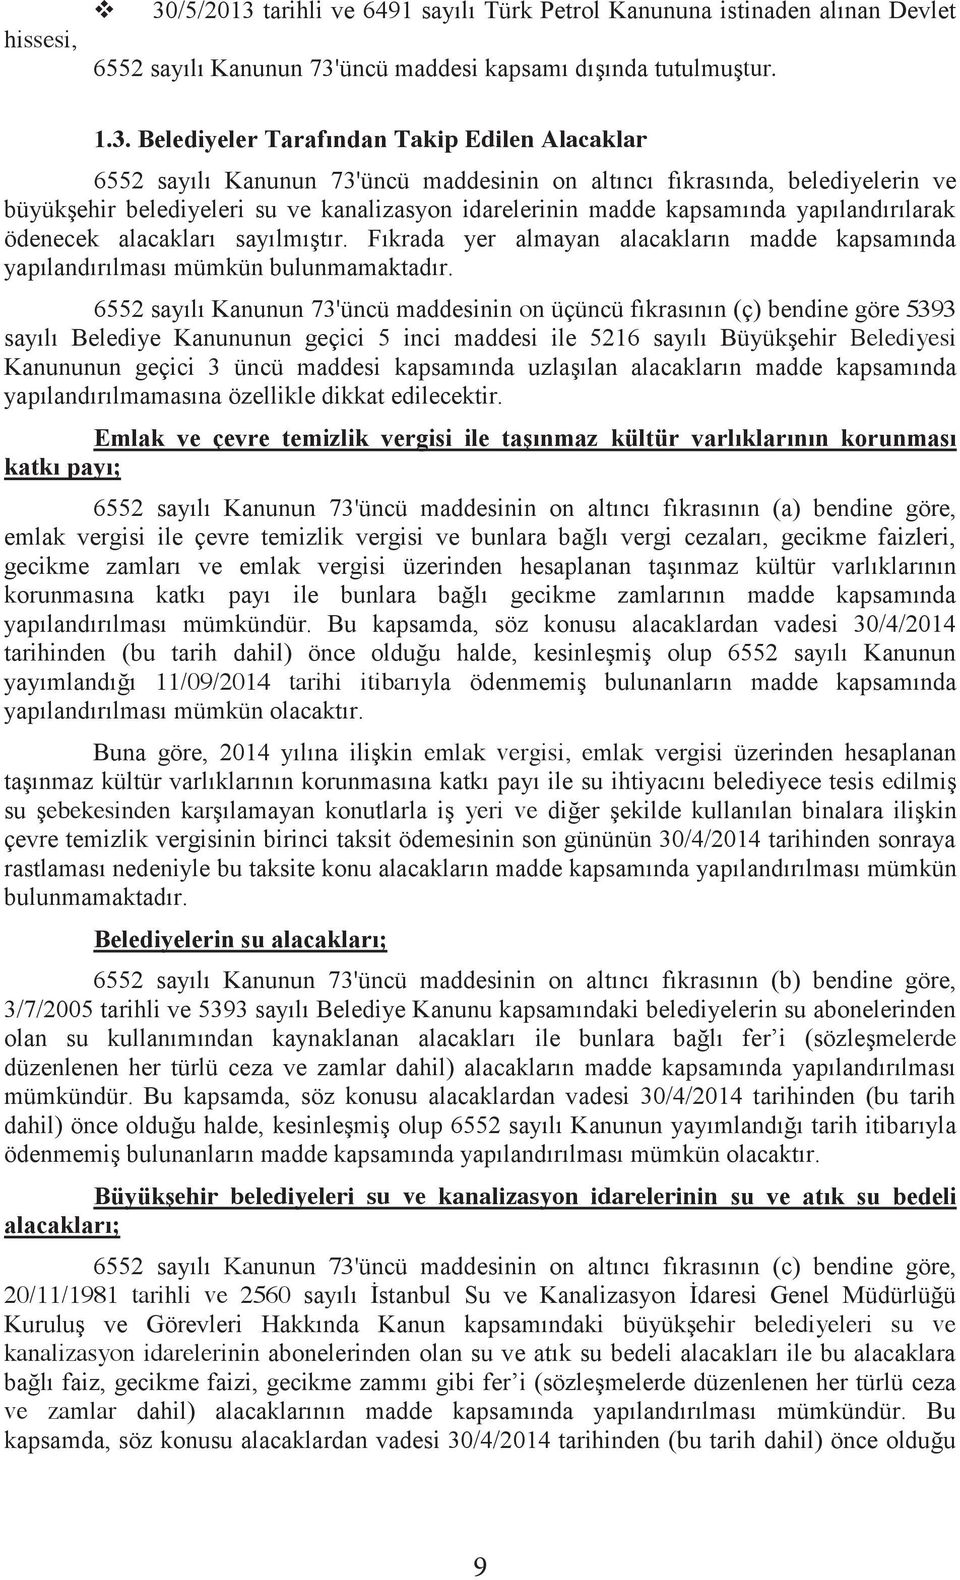 tarihli ve 6491 sayılı Türk Petrol Kanununa istinaden alınan Devlet 6552 sayılı Kanunun 73'